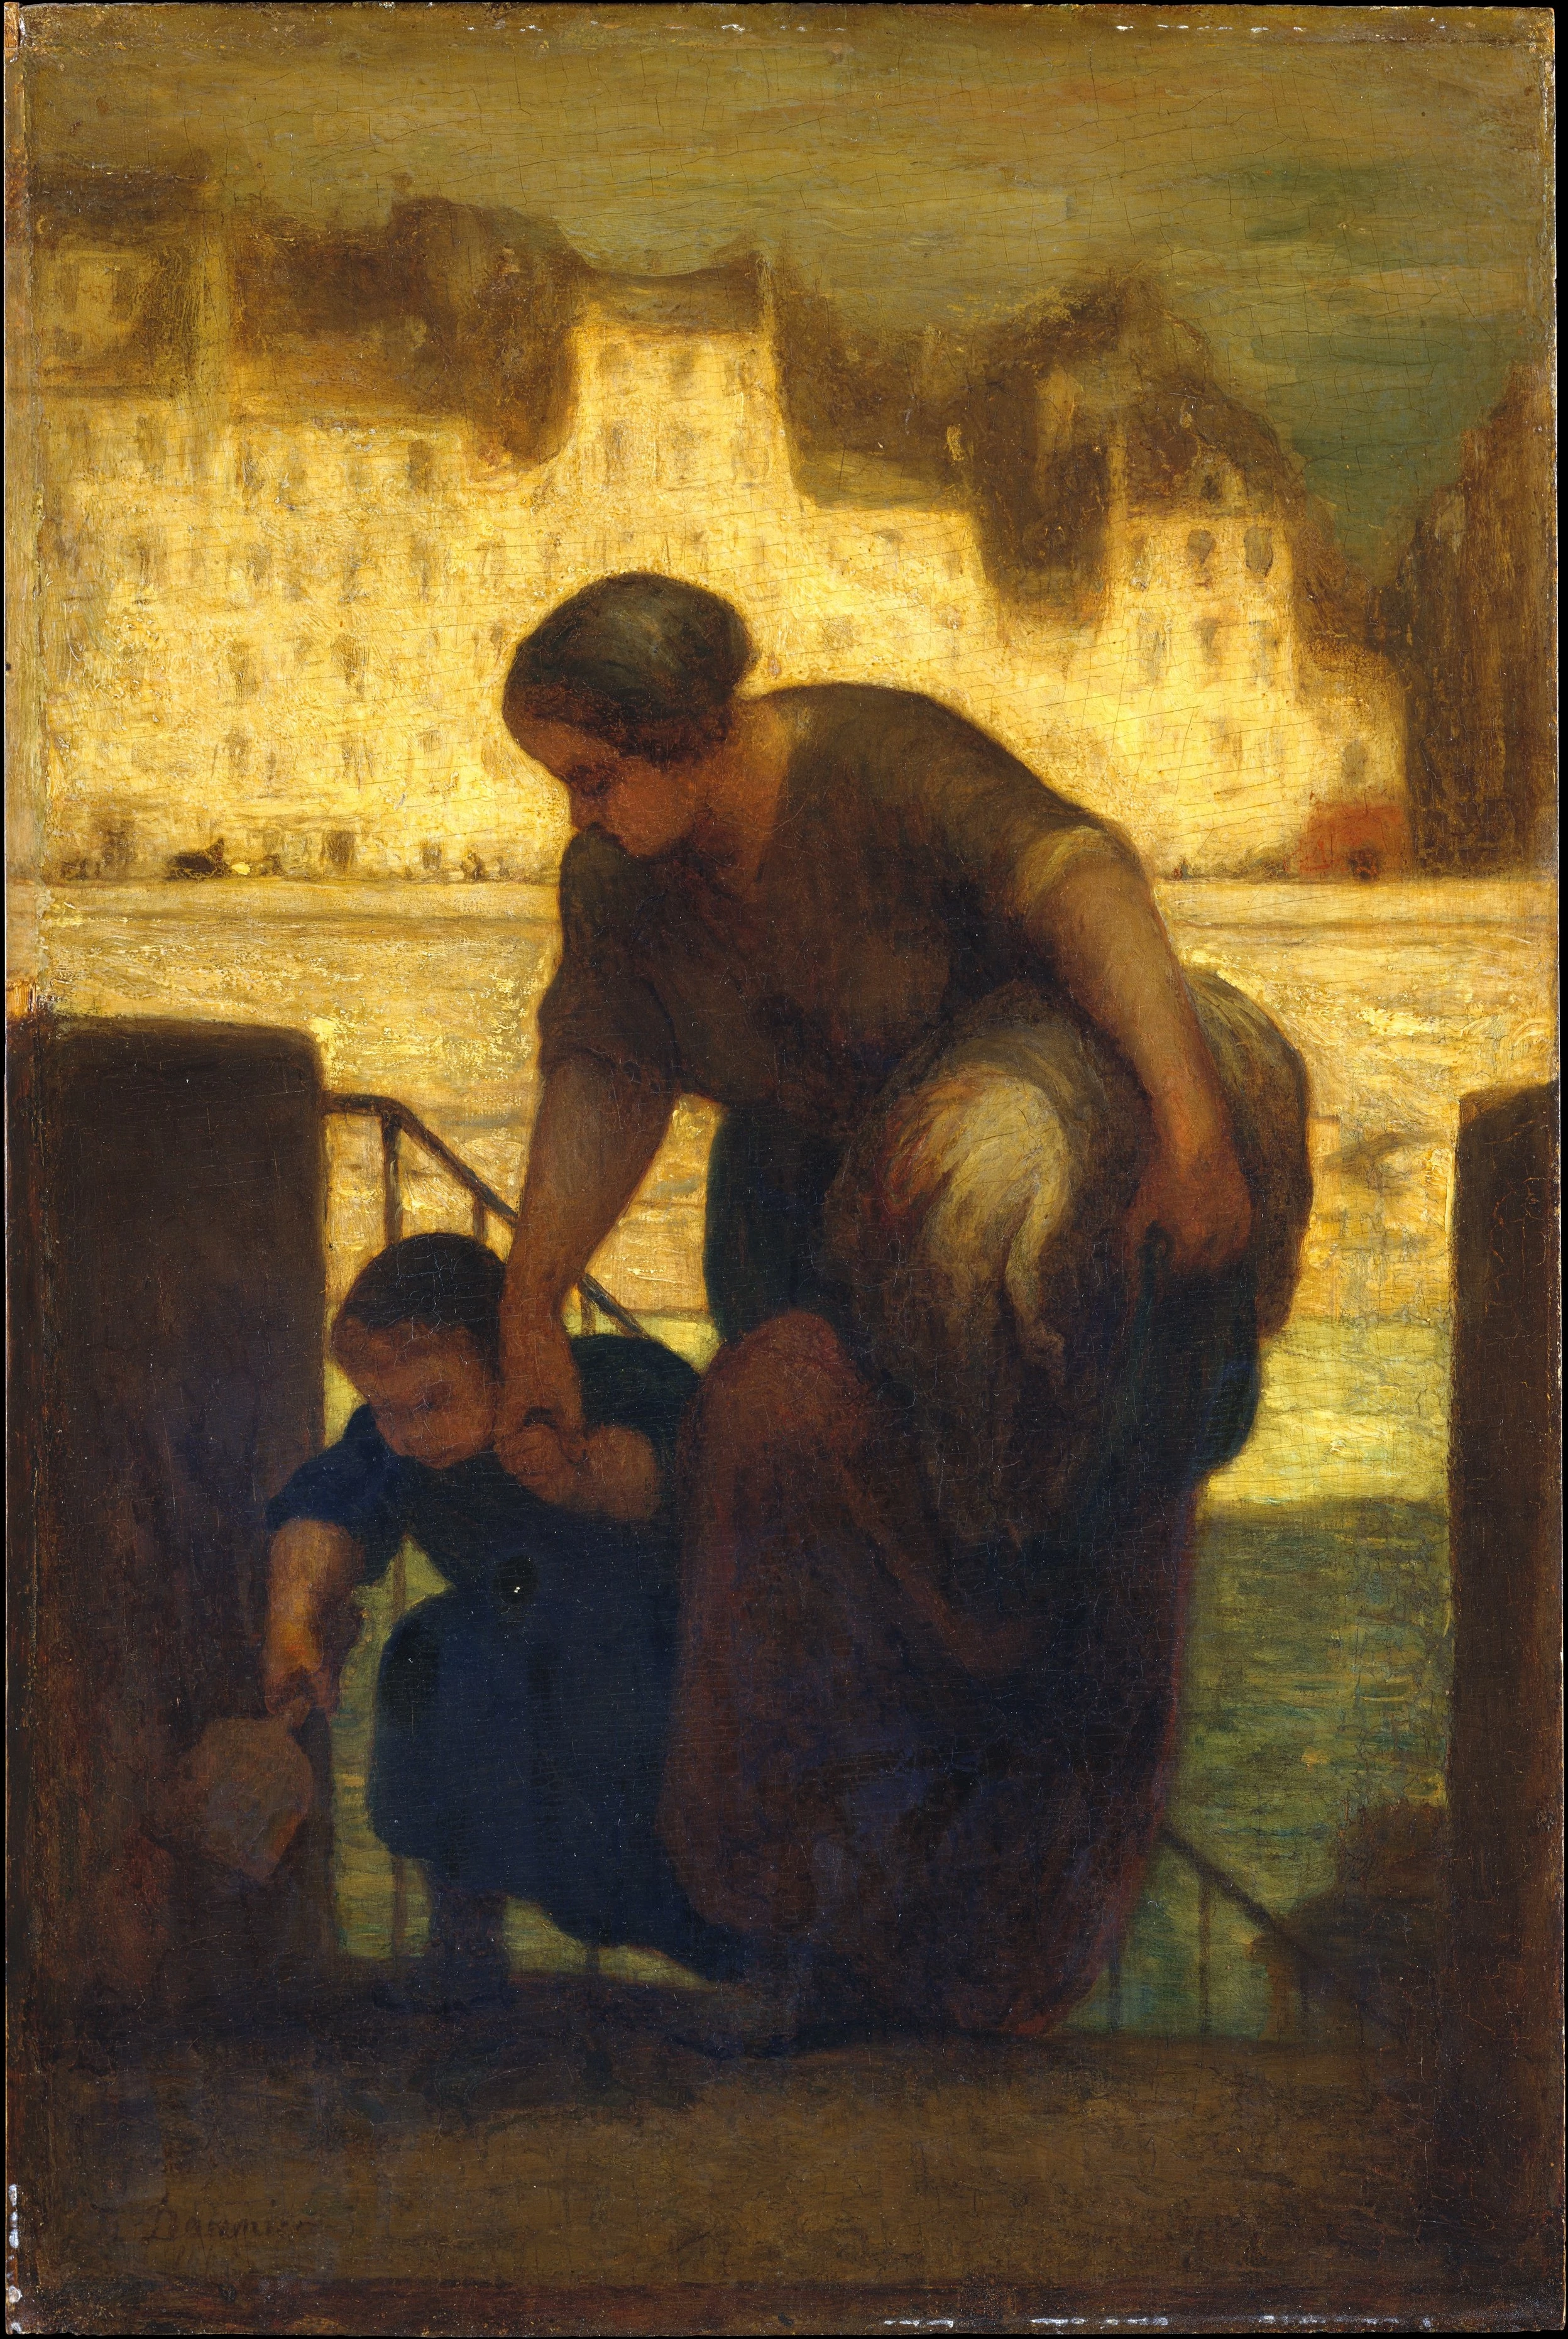 The Laundress, Honoré Daumier